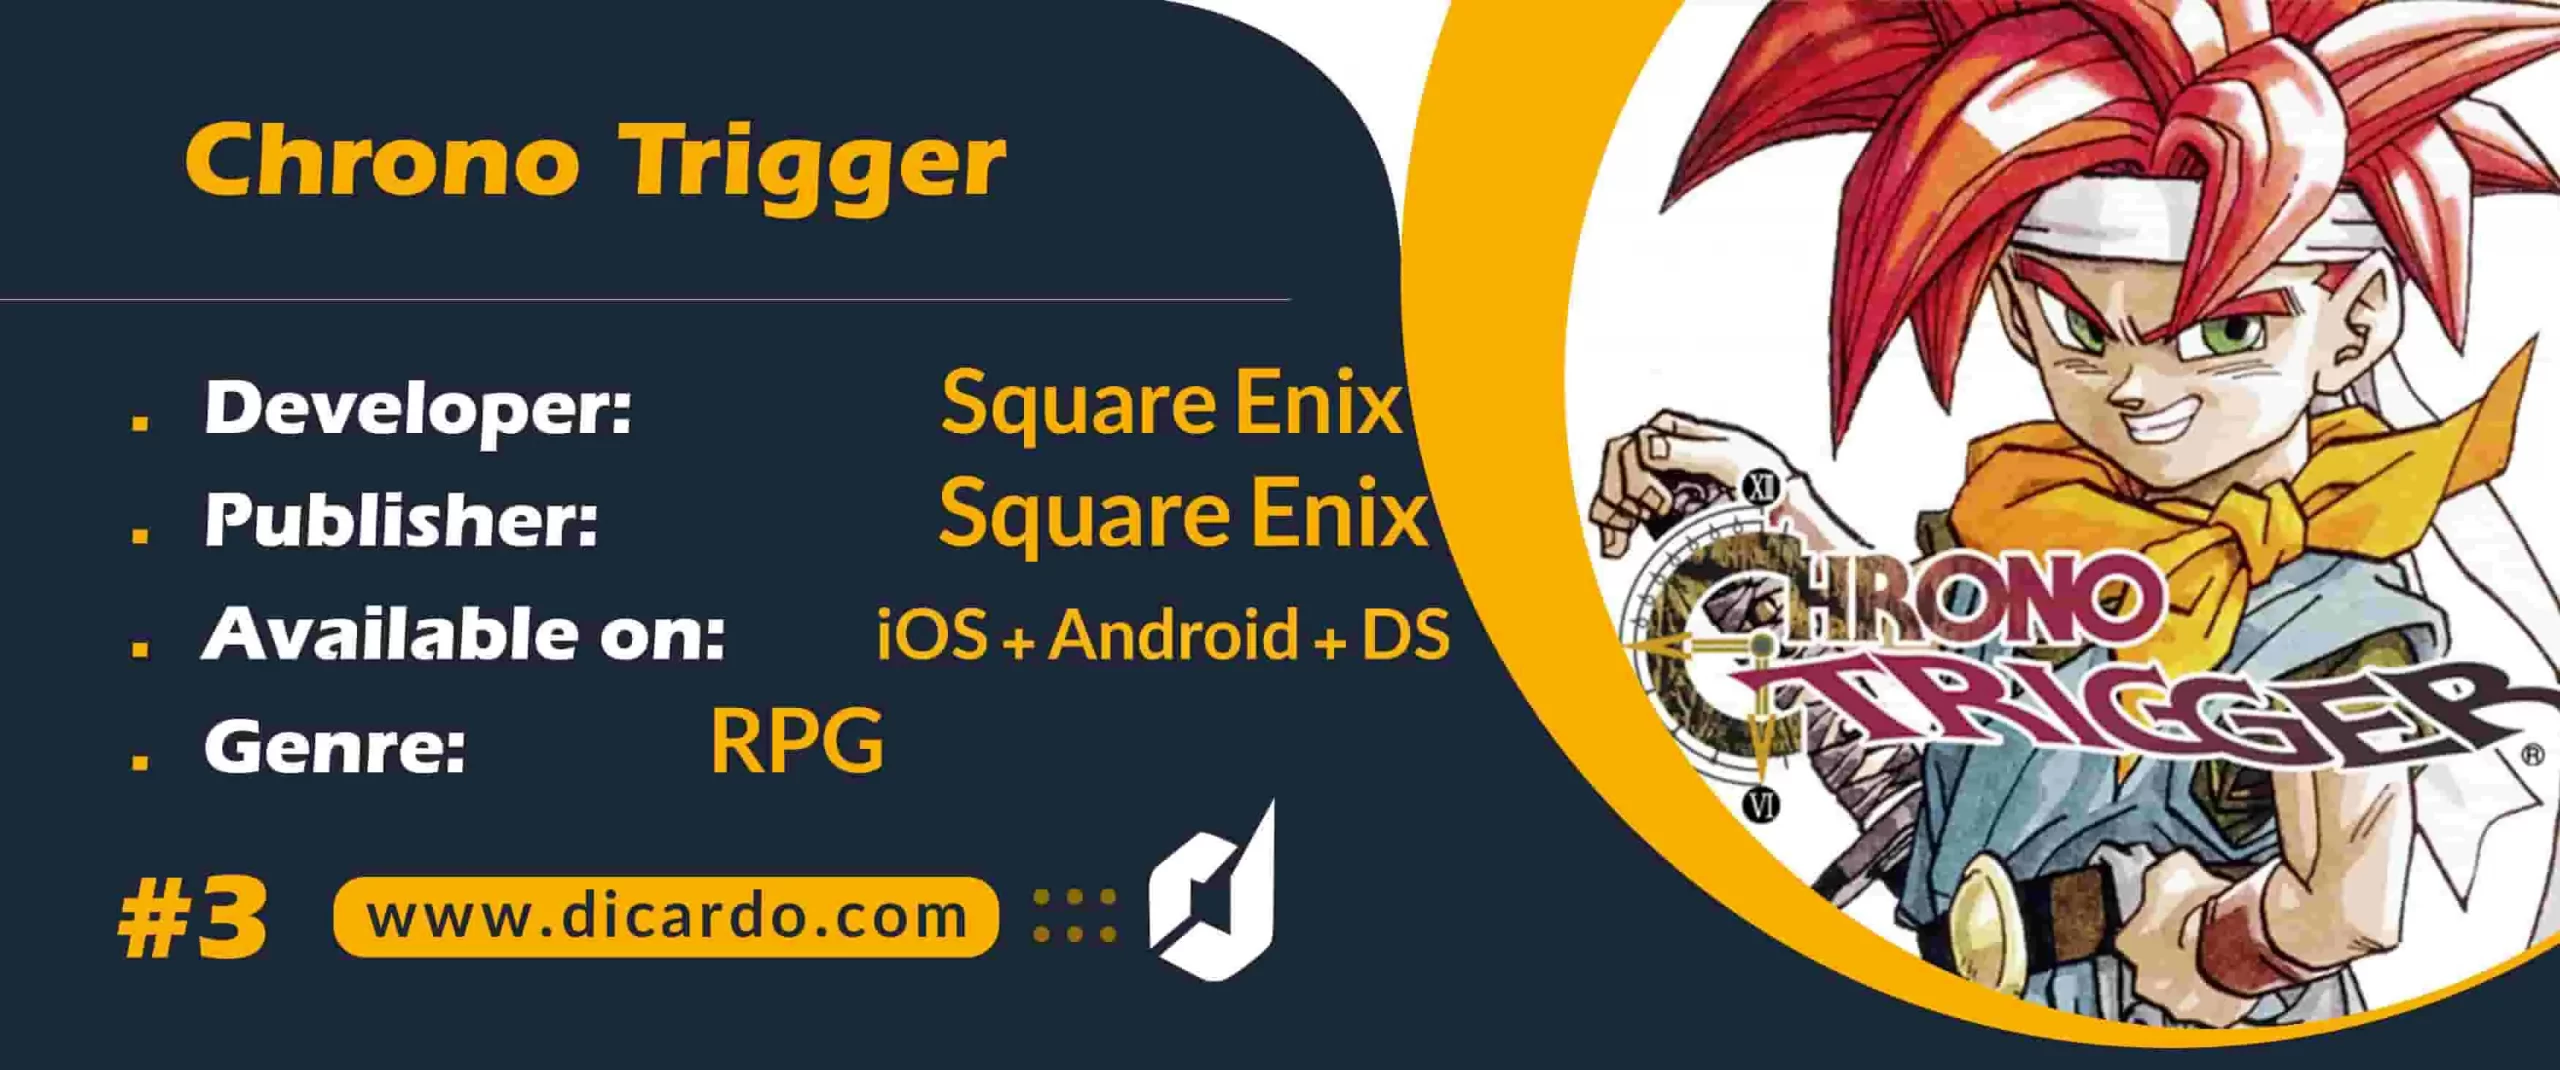 #3 کرونو تایگر Chrono Trigger از برترین بازیهای JRPG با طرحی منحصر بفرد